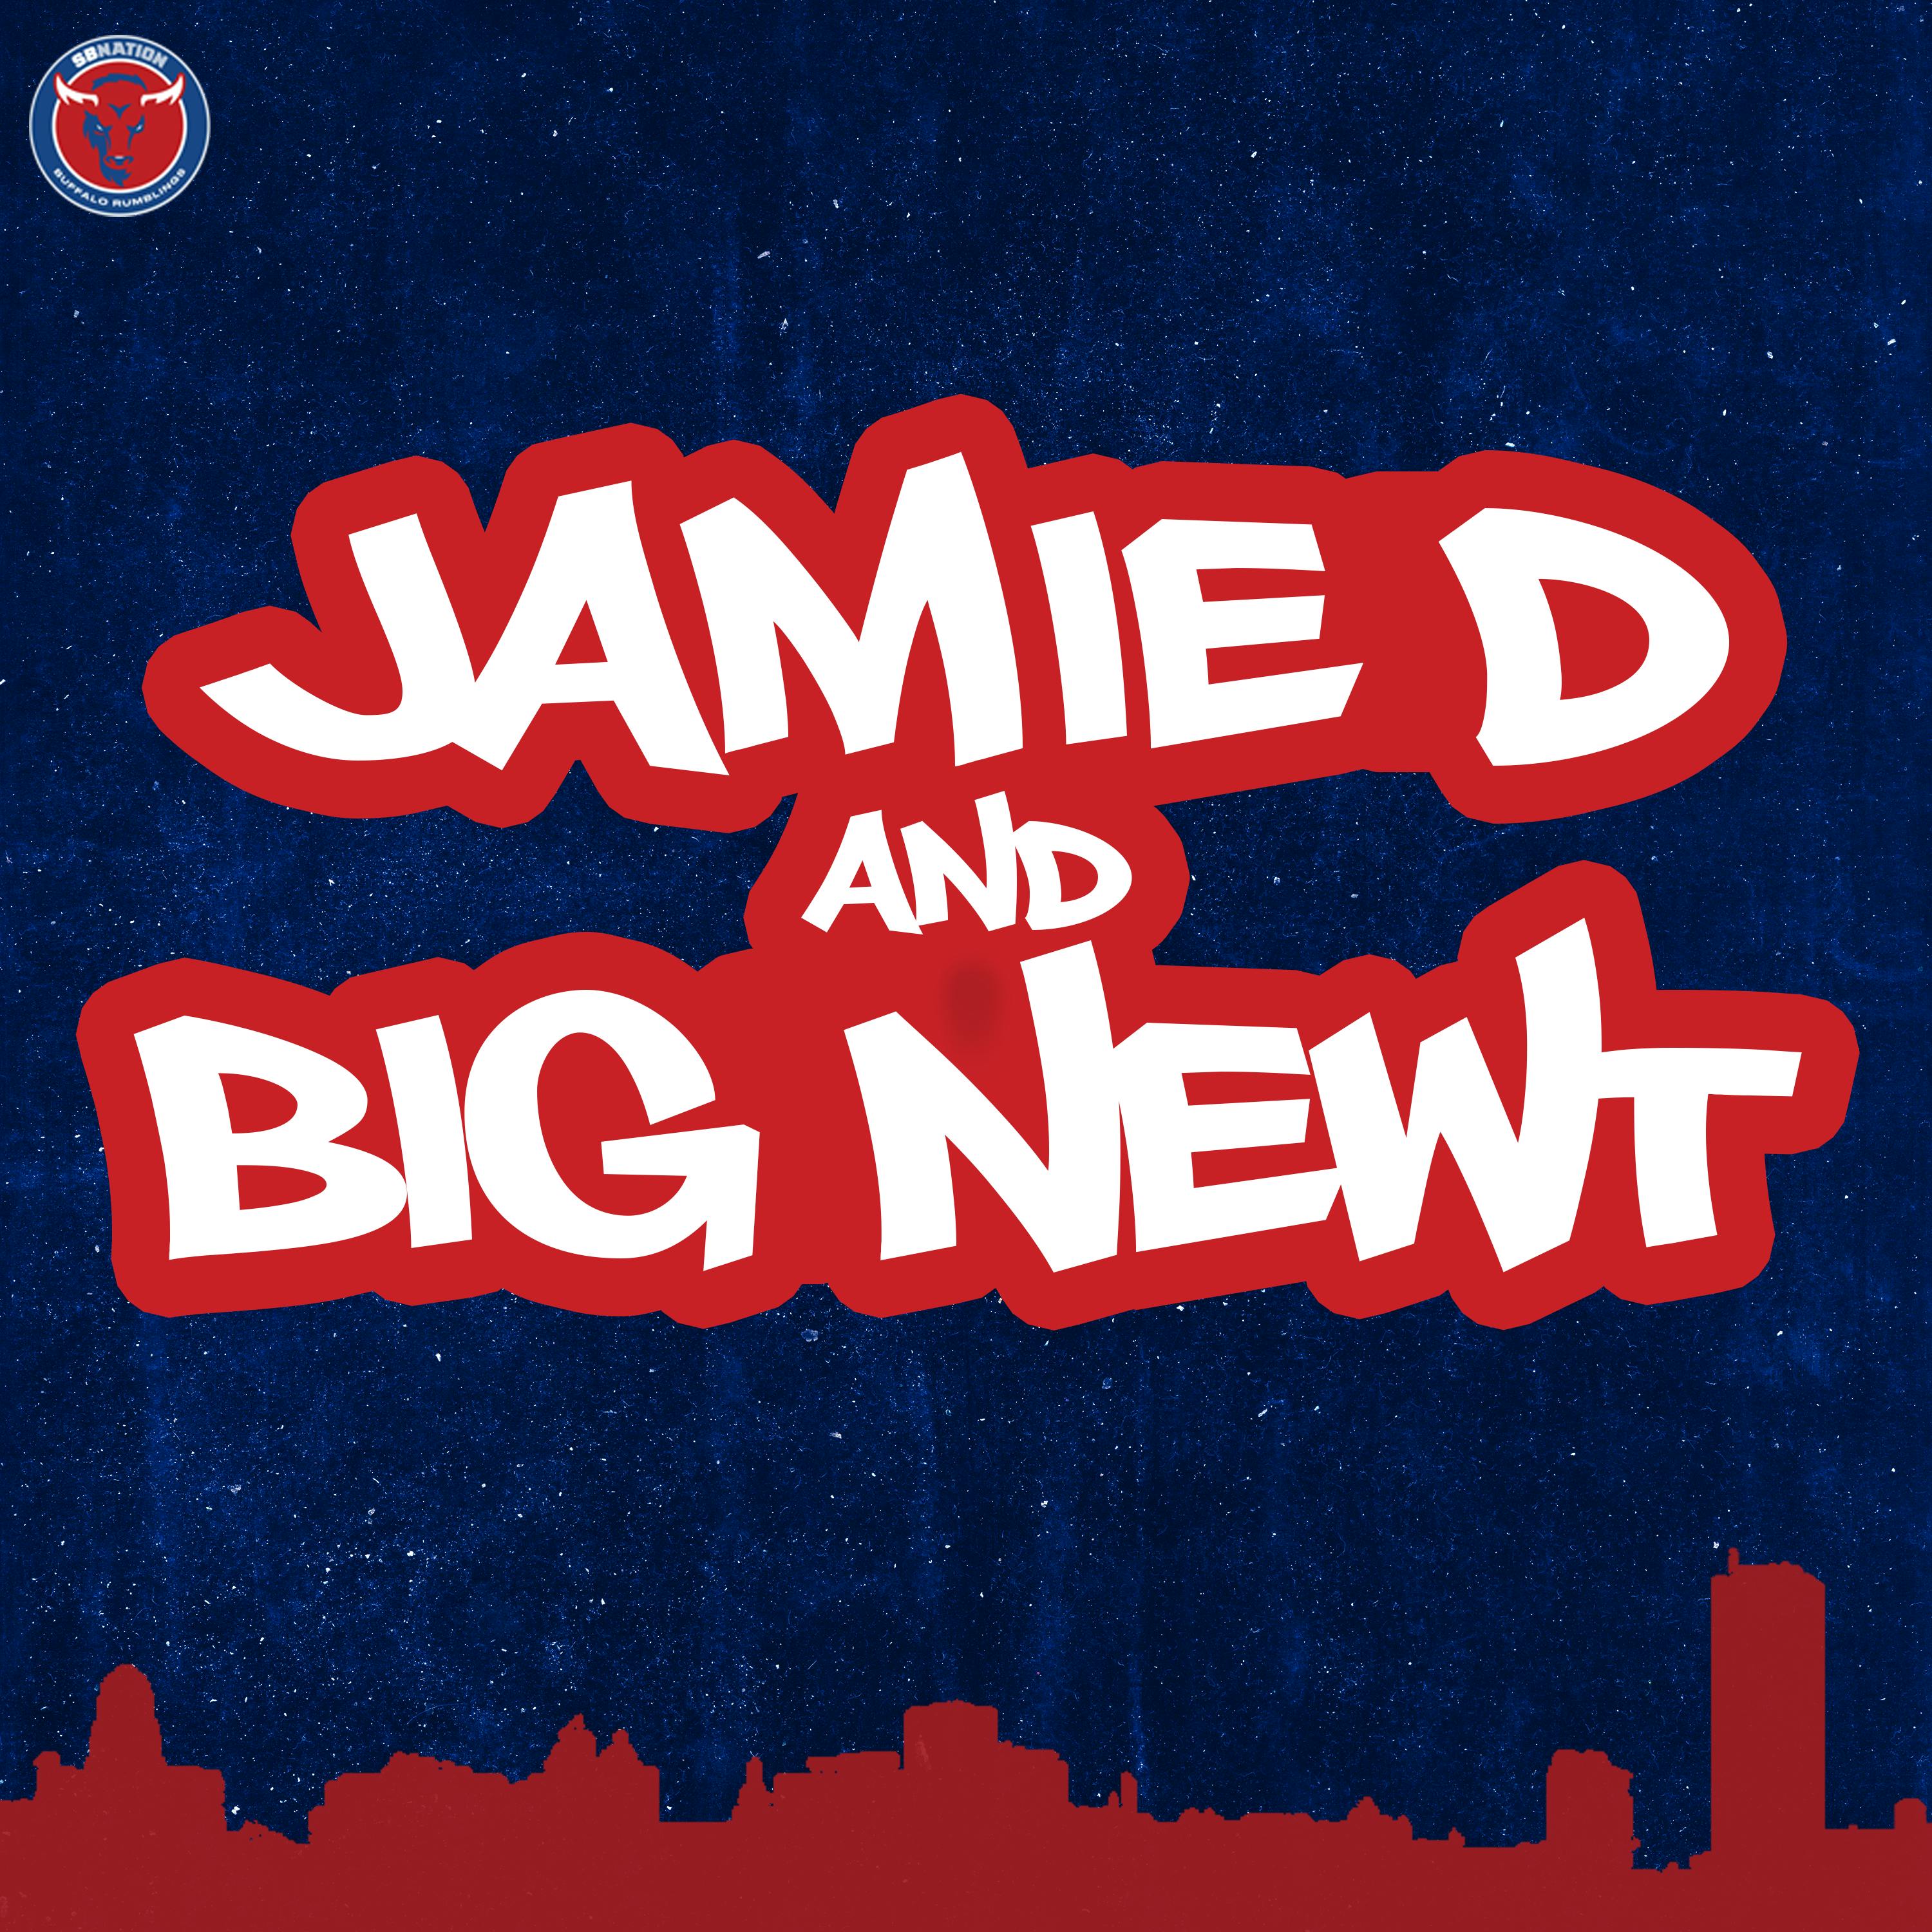 Jamie D & Big Newt: Scene set for Bills